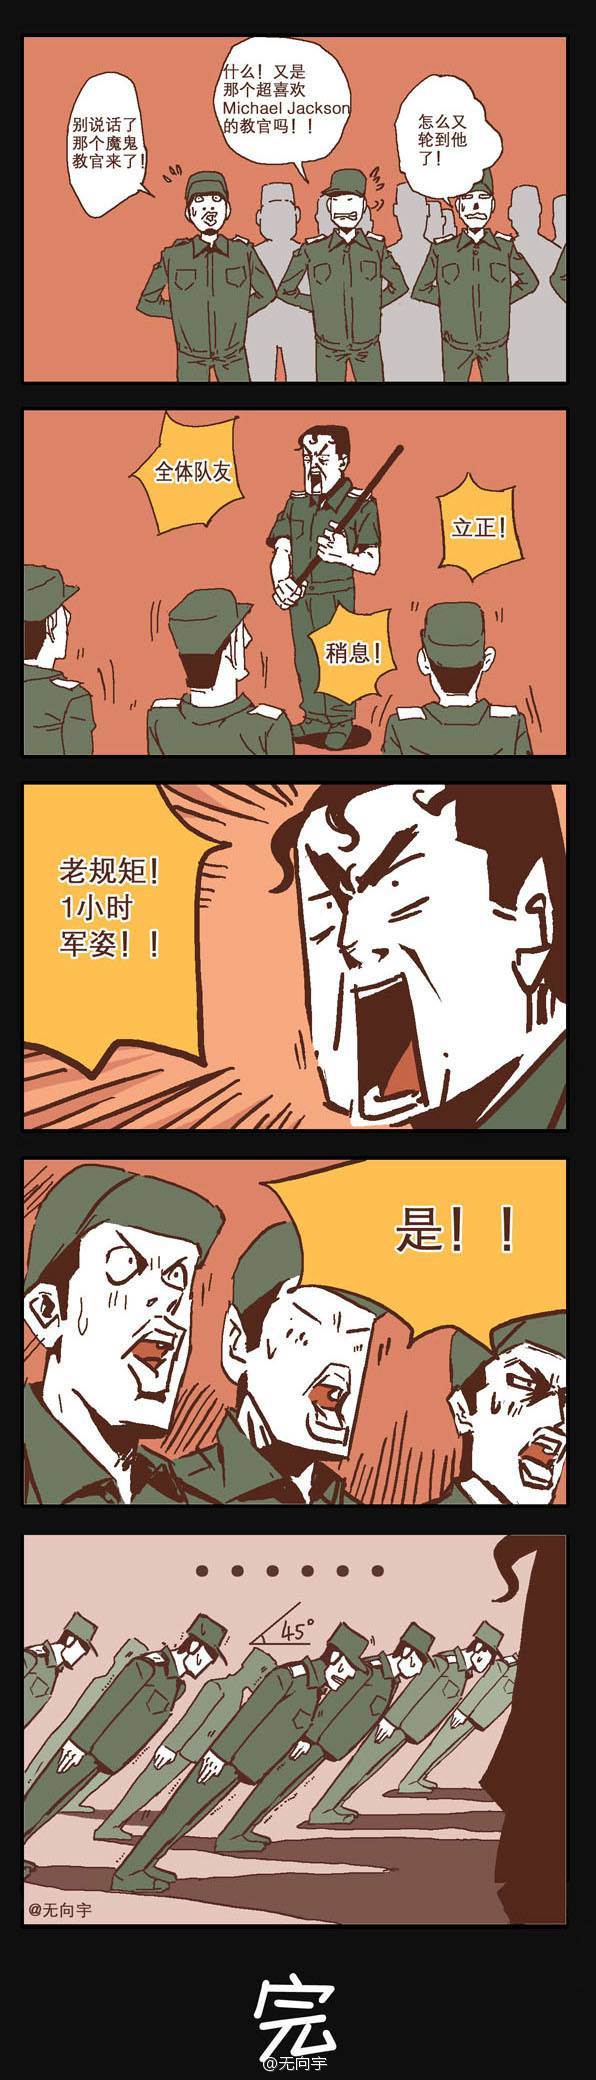 邪恶漫画爆笑囧图第227刊：醒酒的两种方法